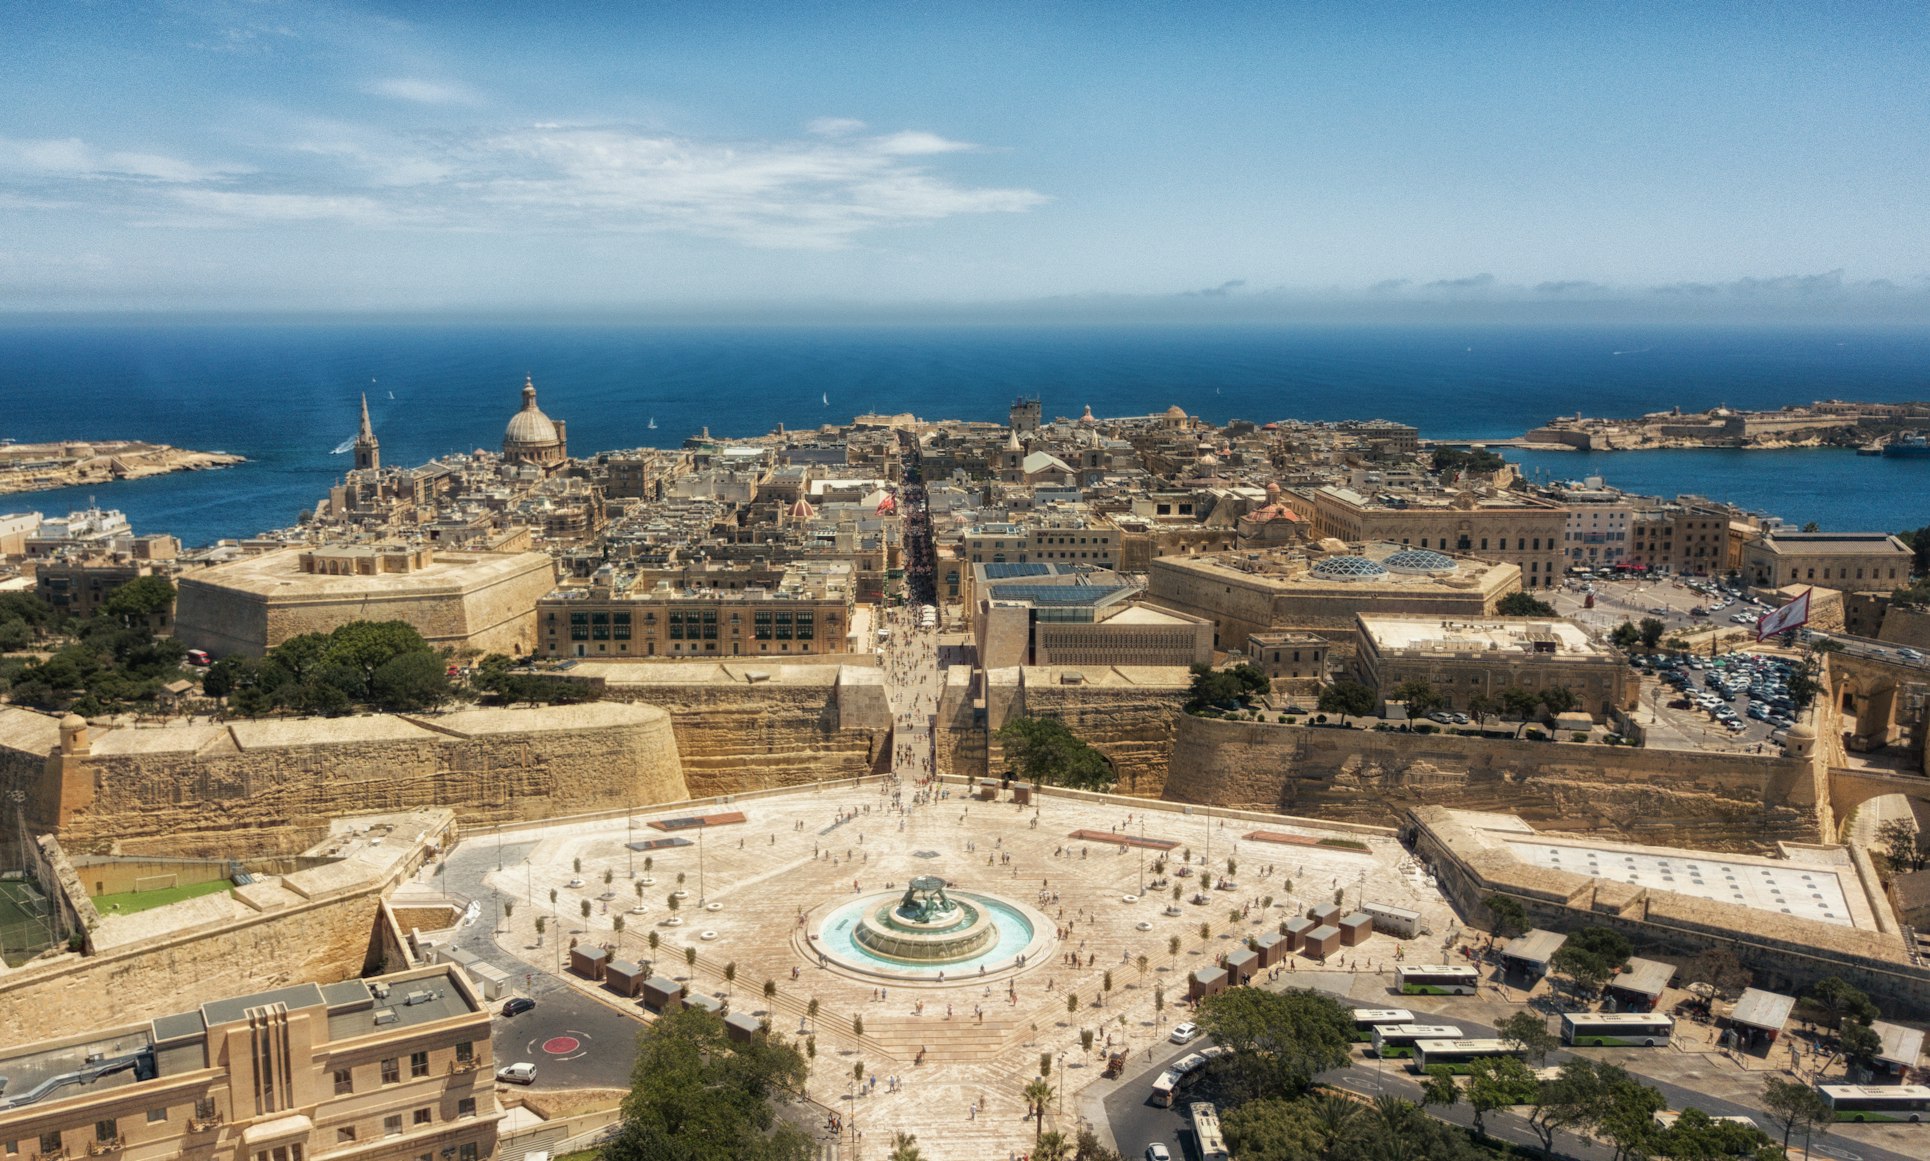 Una piazza e degli edifici storici a Malta nella città di La Valletta